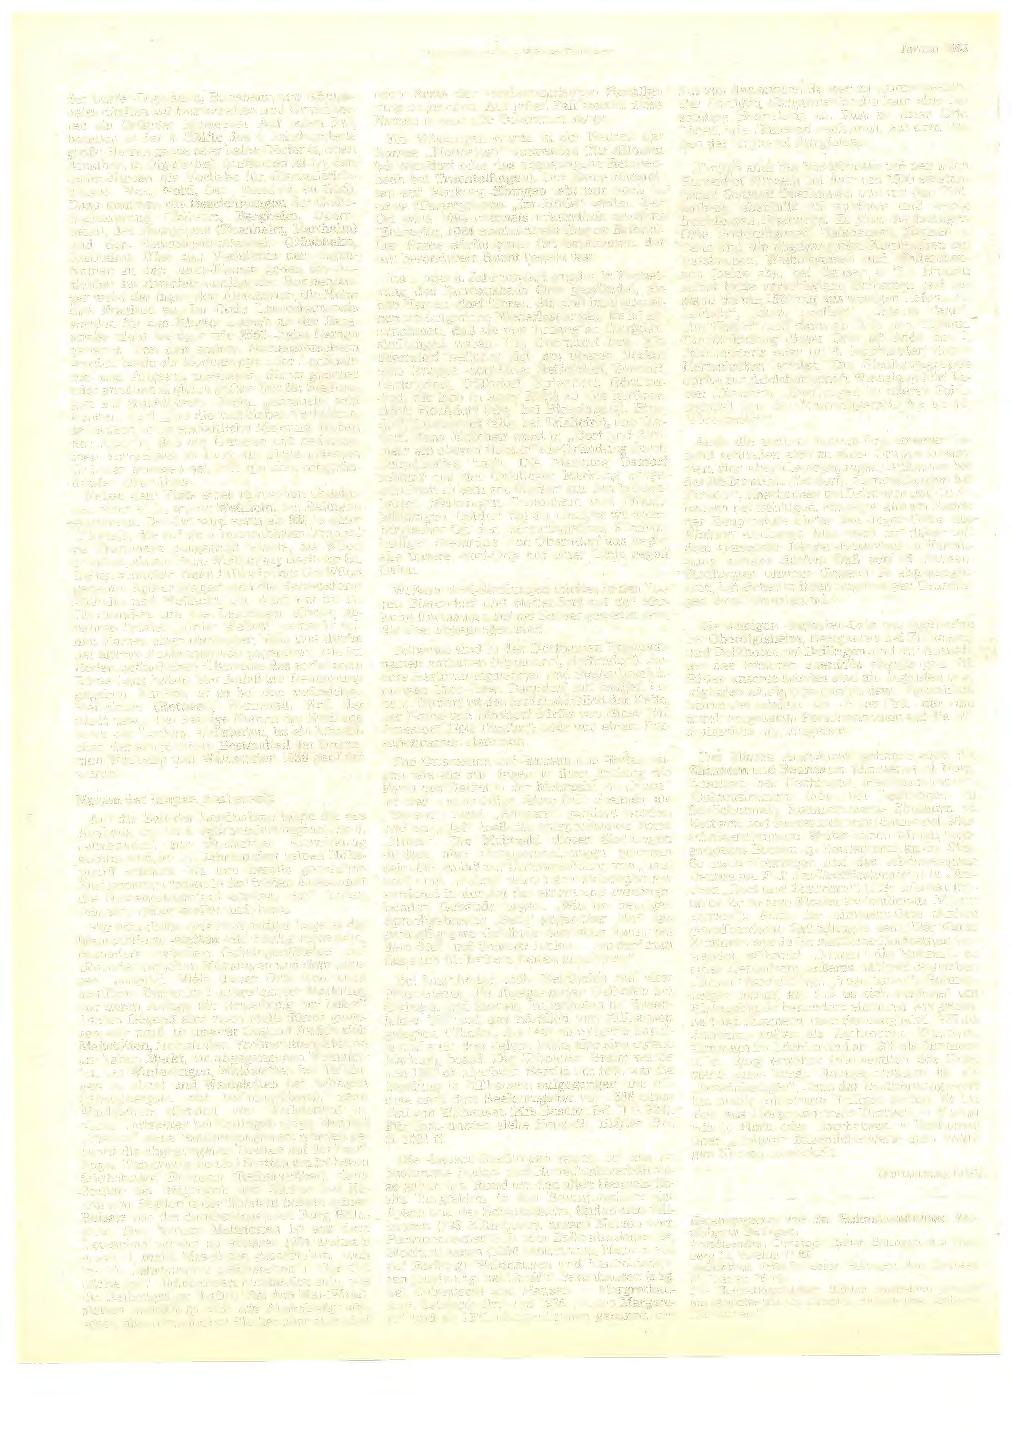 Seite 388 Heimatkundliehe Blätter Bahngen Januar 1983 der Dörfer Digisheim, Bubsheim und Königsheim dürften auf Herrschaften und Grundherren als Gründer hinweisen. Auf jeden Fall besaßen in der 2.